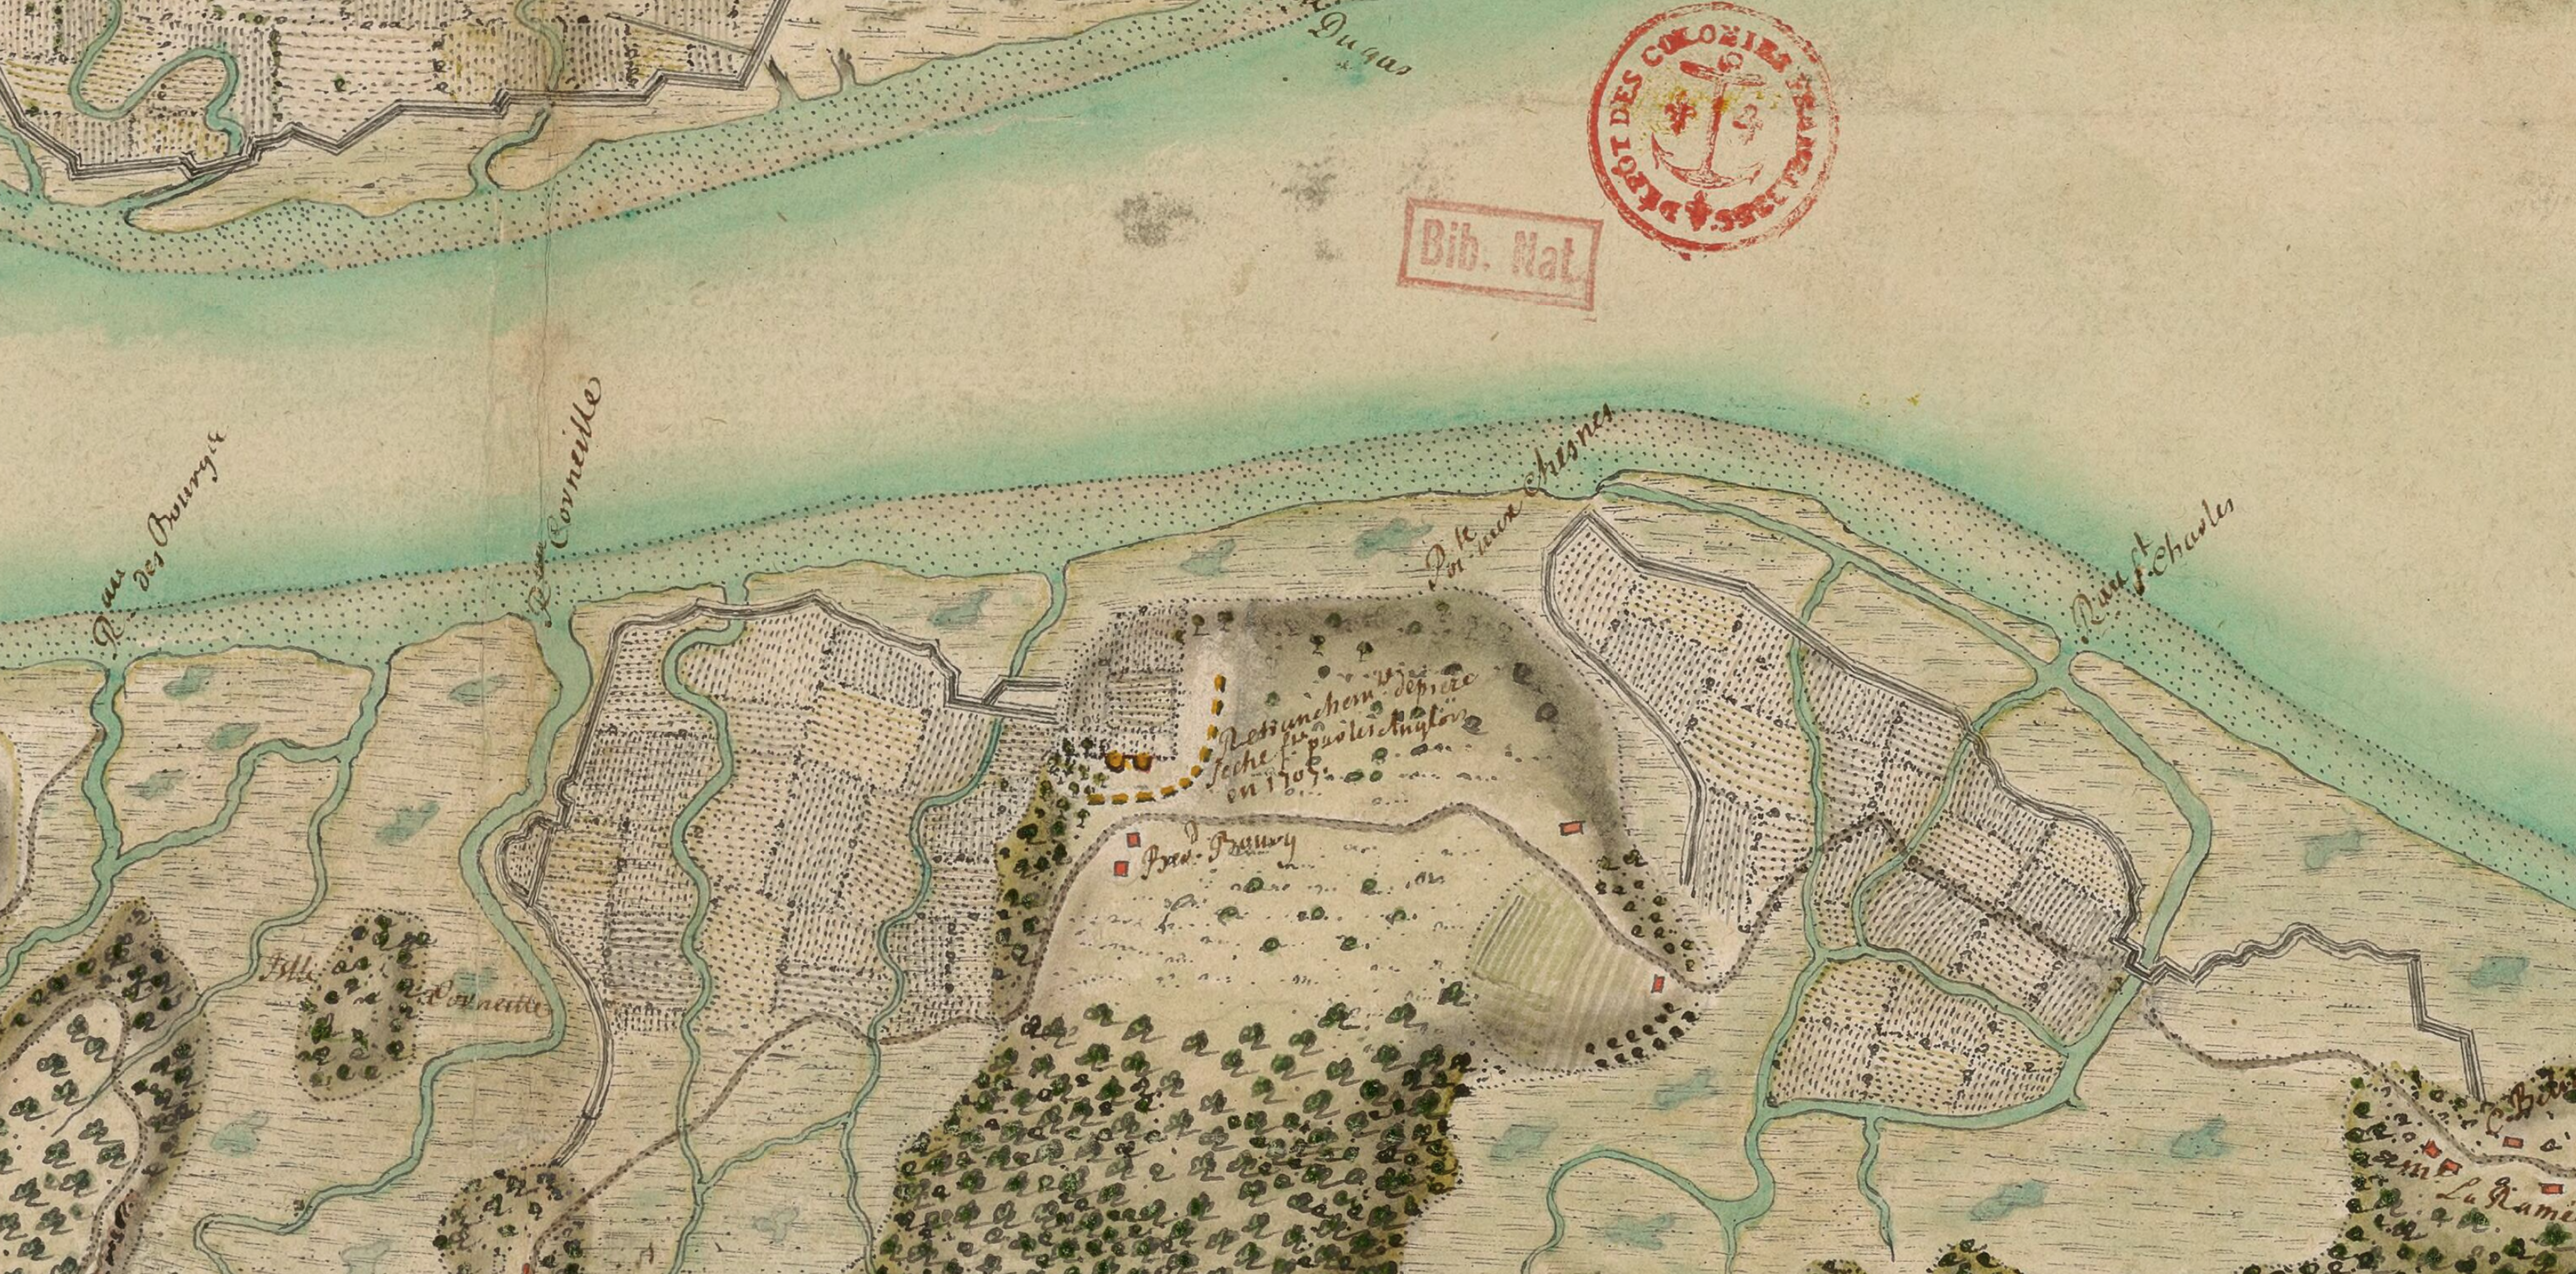 Detail of dyked farmland near Port Royal, Acadia, 1710